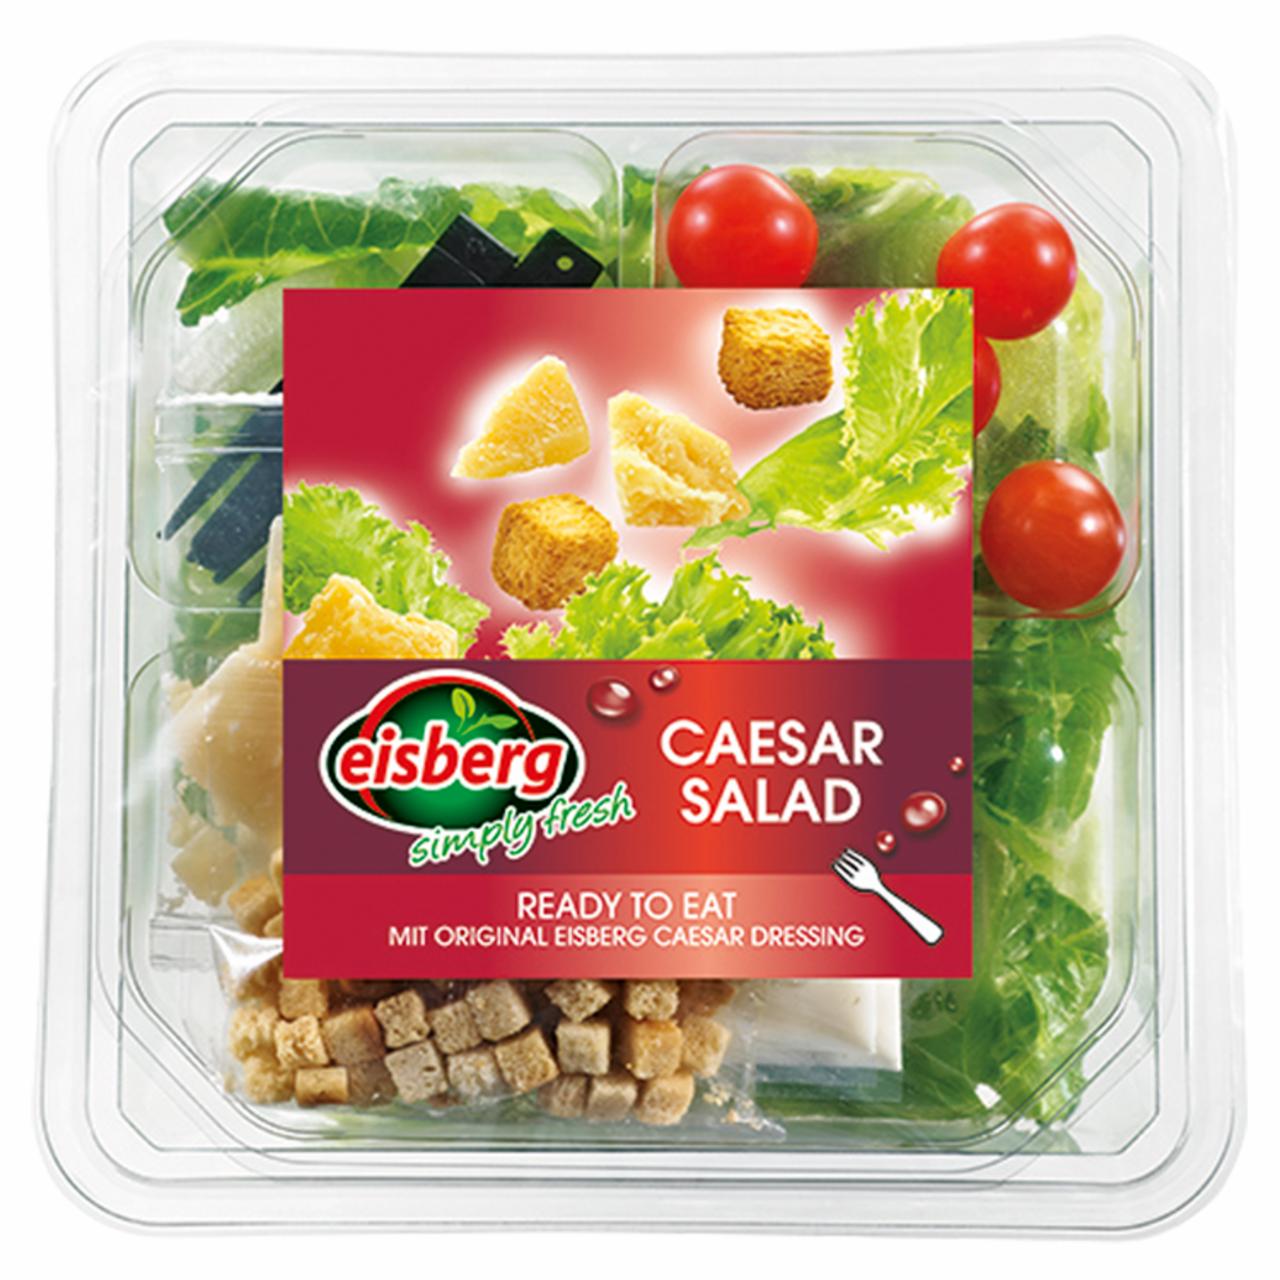 Képek - Eisberg Cézár salátatál 200 g